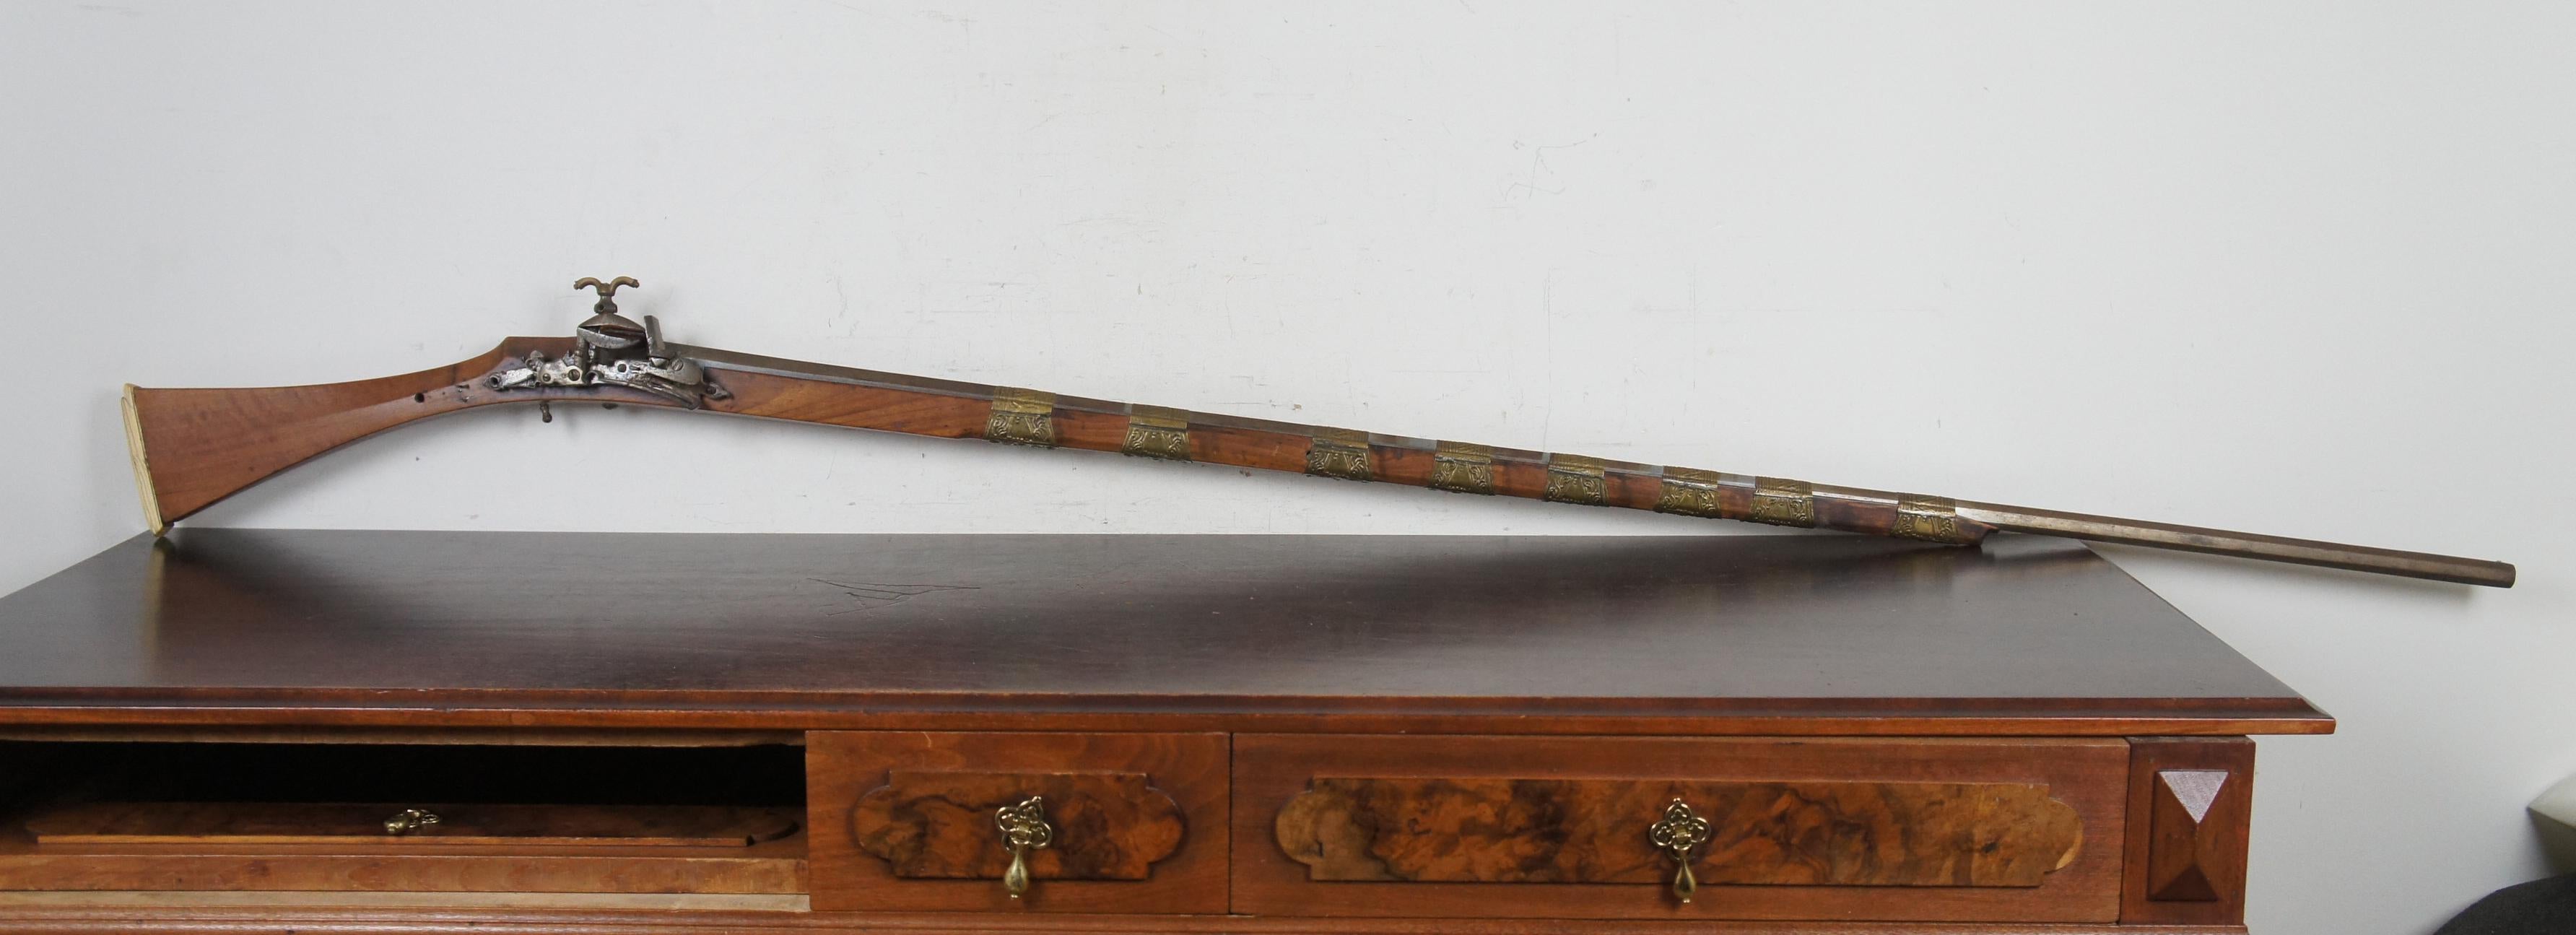 Eine schöne späten 18. Jahrhundert marokkanischen Miquelet Steinschlossgewehr. Mit einem achteckigen 56-Zoll-Lauf, der mit geprägtem Messing ummantelt ist. Der Hinterschaft ist aus Knochen, zusätzlich zu einigen Akzenten an der Seite und um den